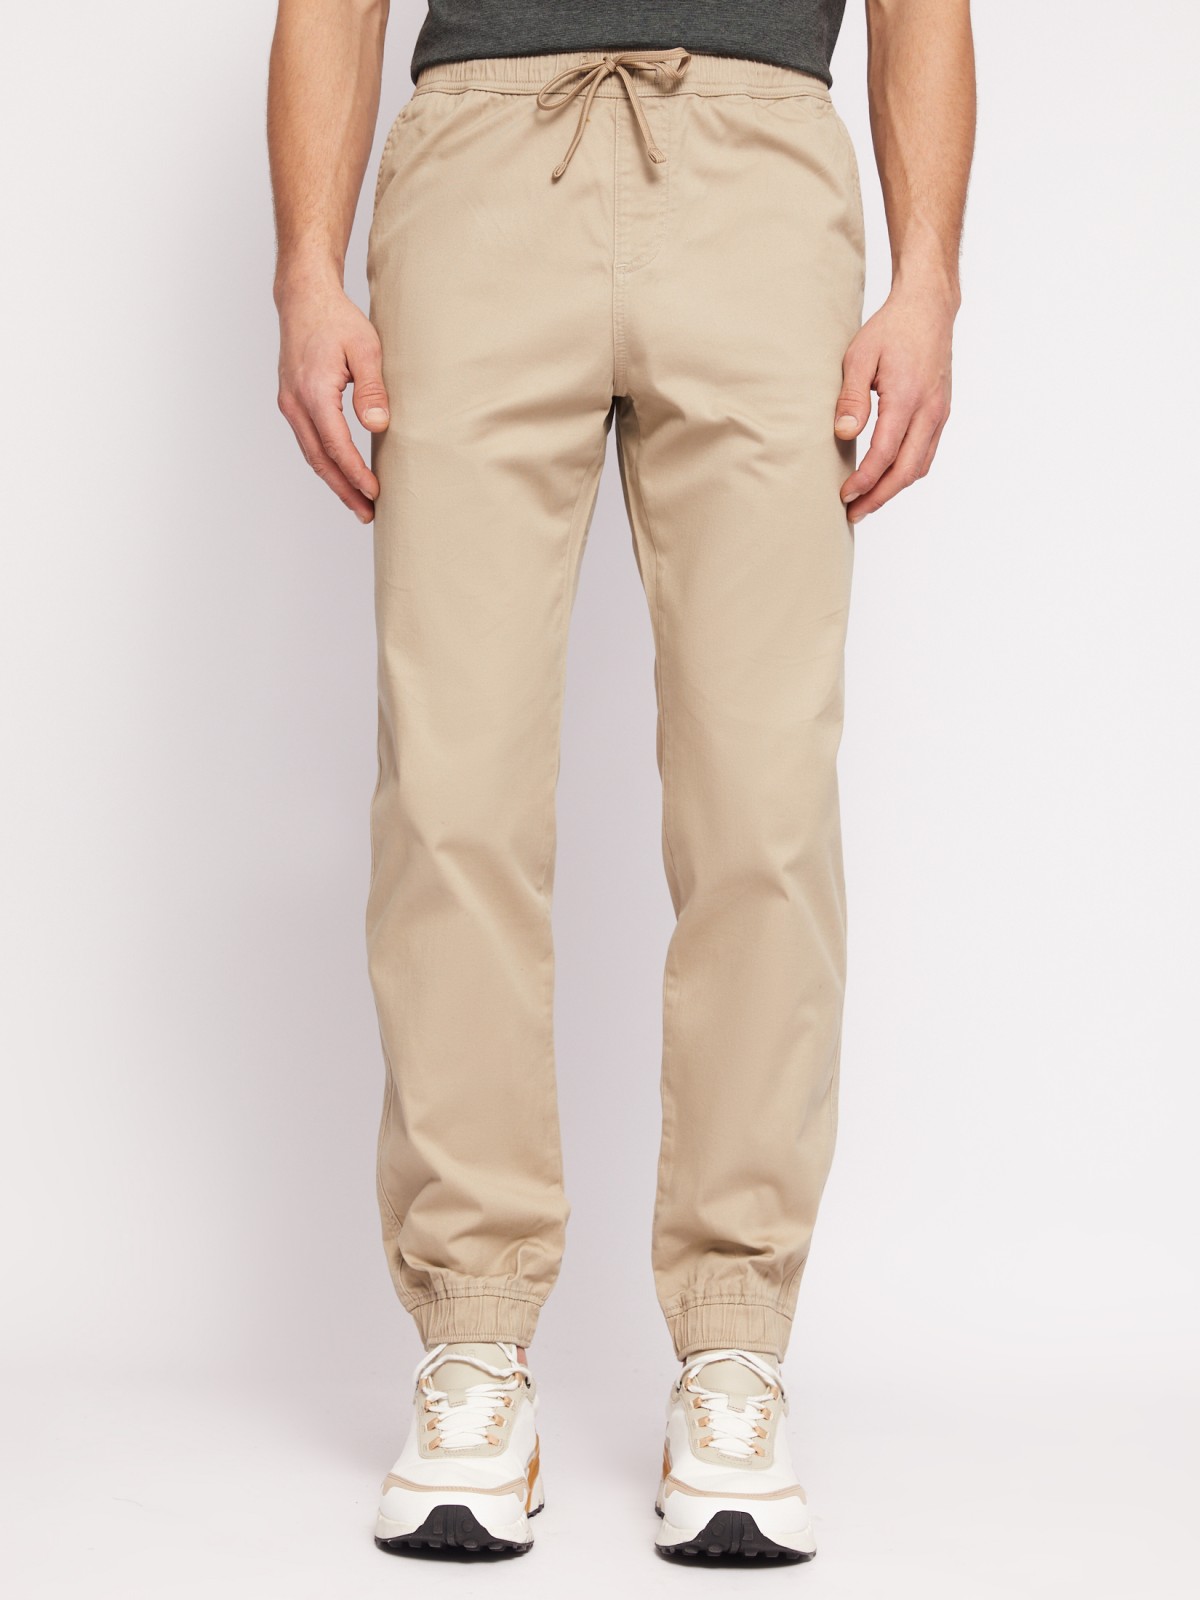 Прямые брюки-джоггеры из хлопка на резинке zolla N1421730L012, цвет бежевый, размер 34 - фото 2